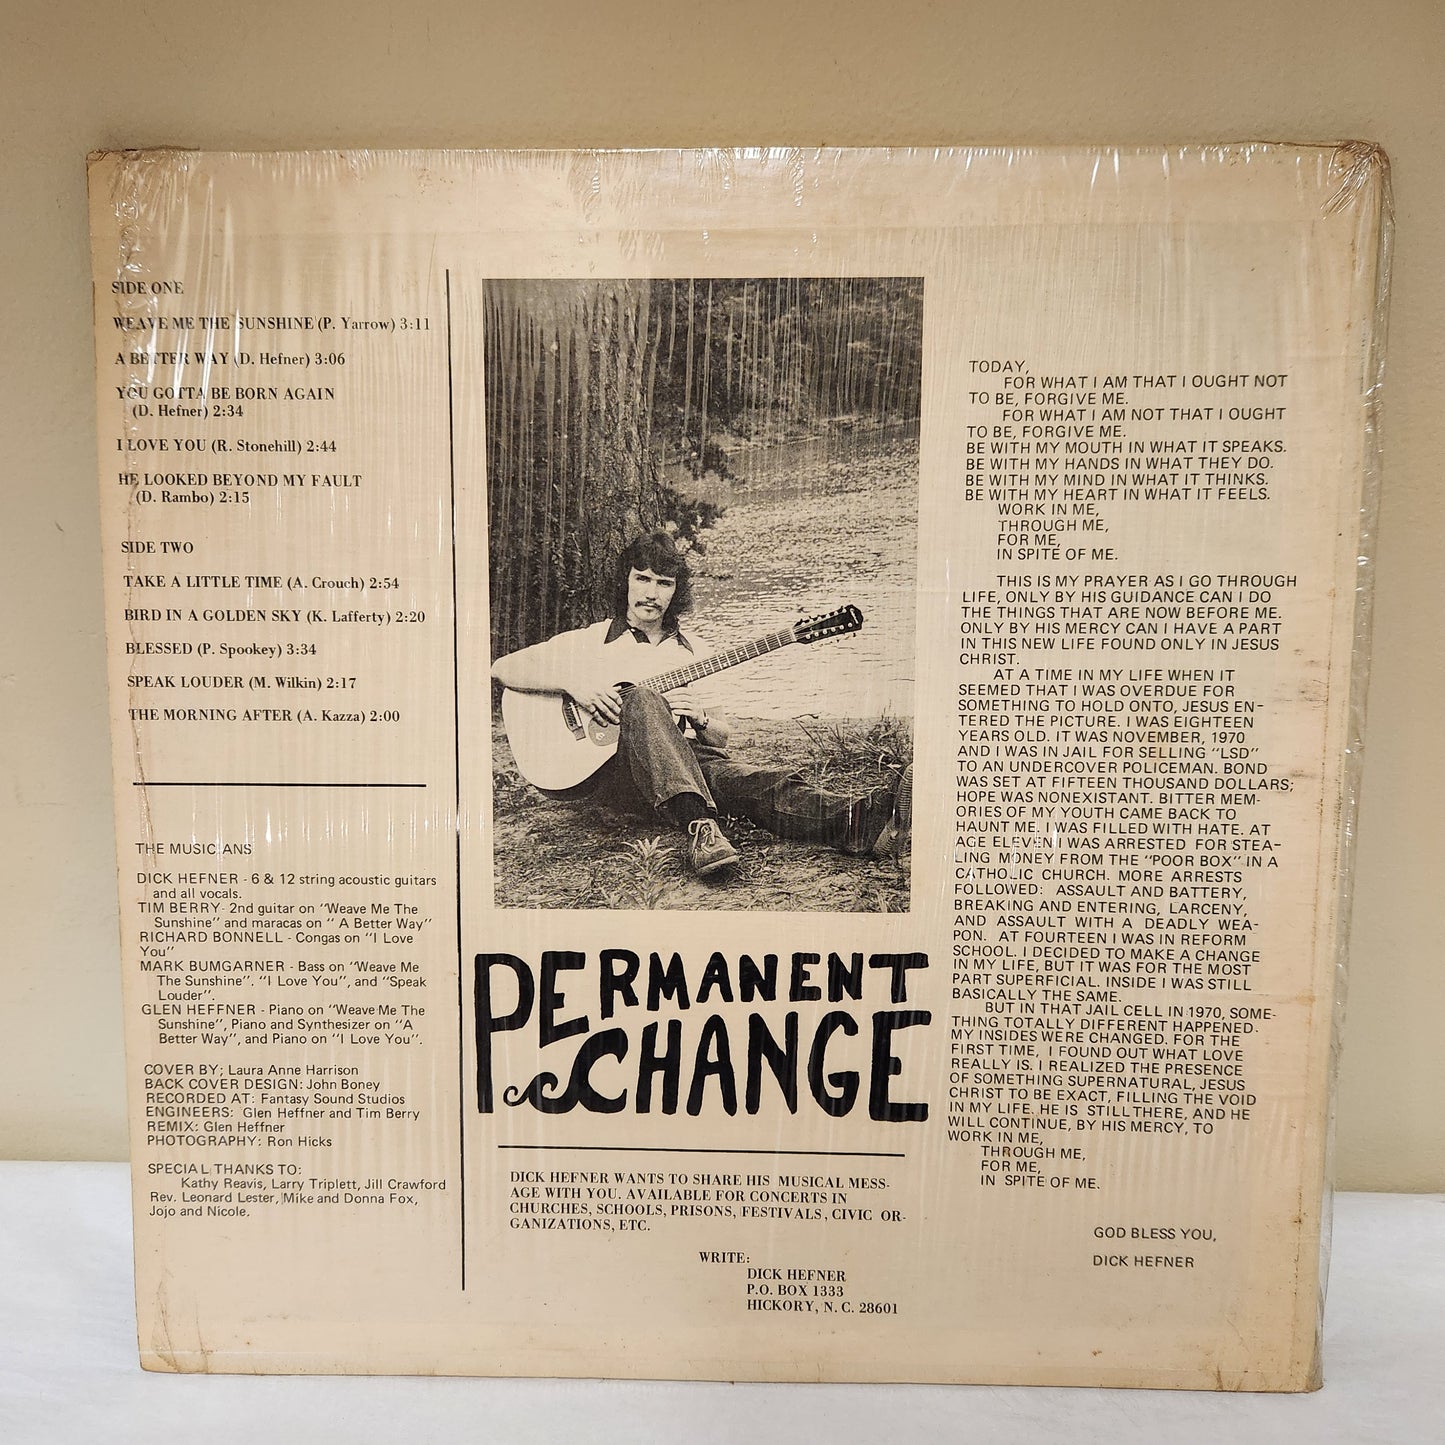 Dick Hefner "Permanent Change" 1970's Christian Folk Rock Album